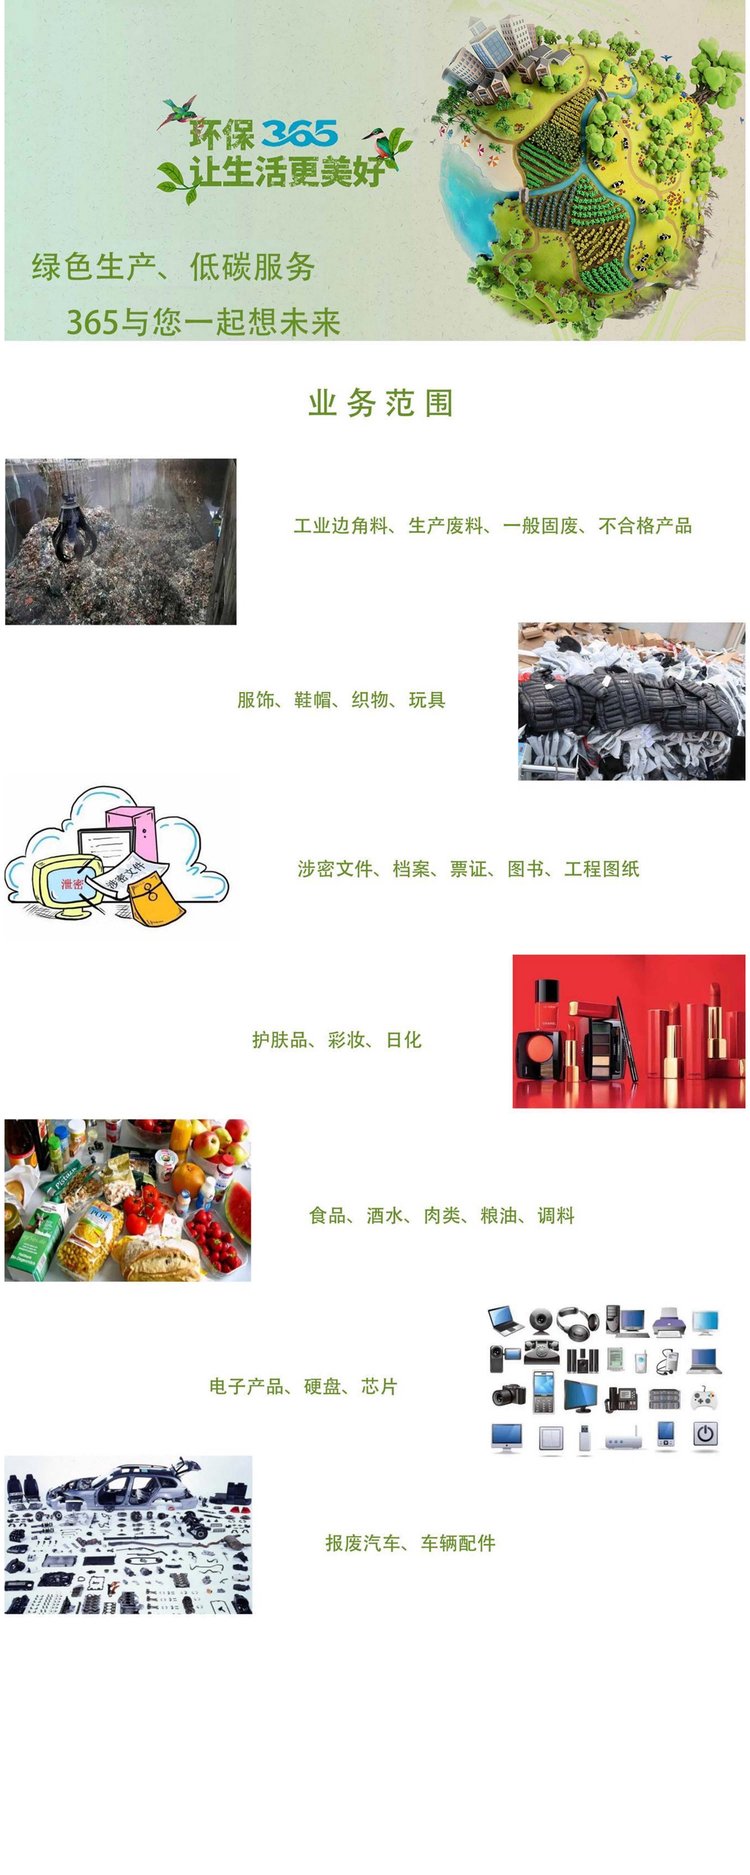 深圳废弃化妆品销毁机构环保焚烧无害化处置